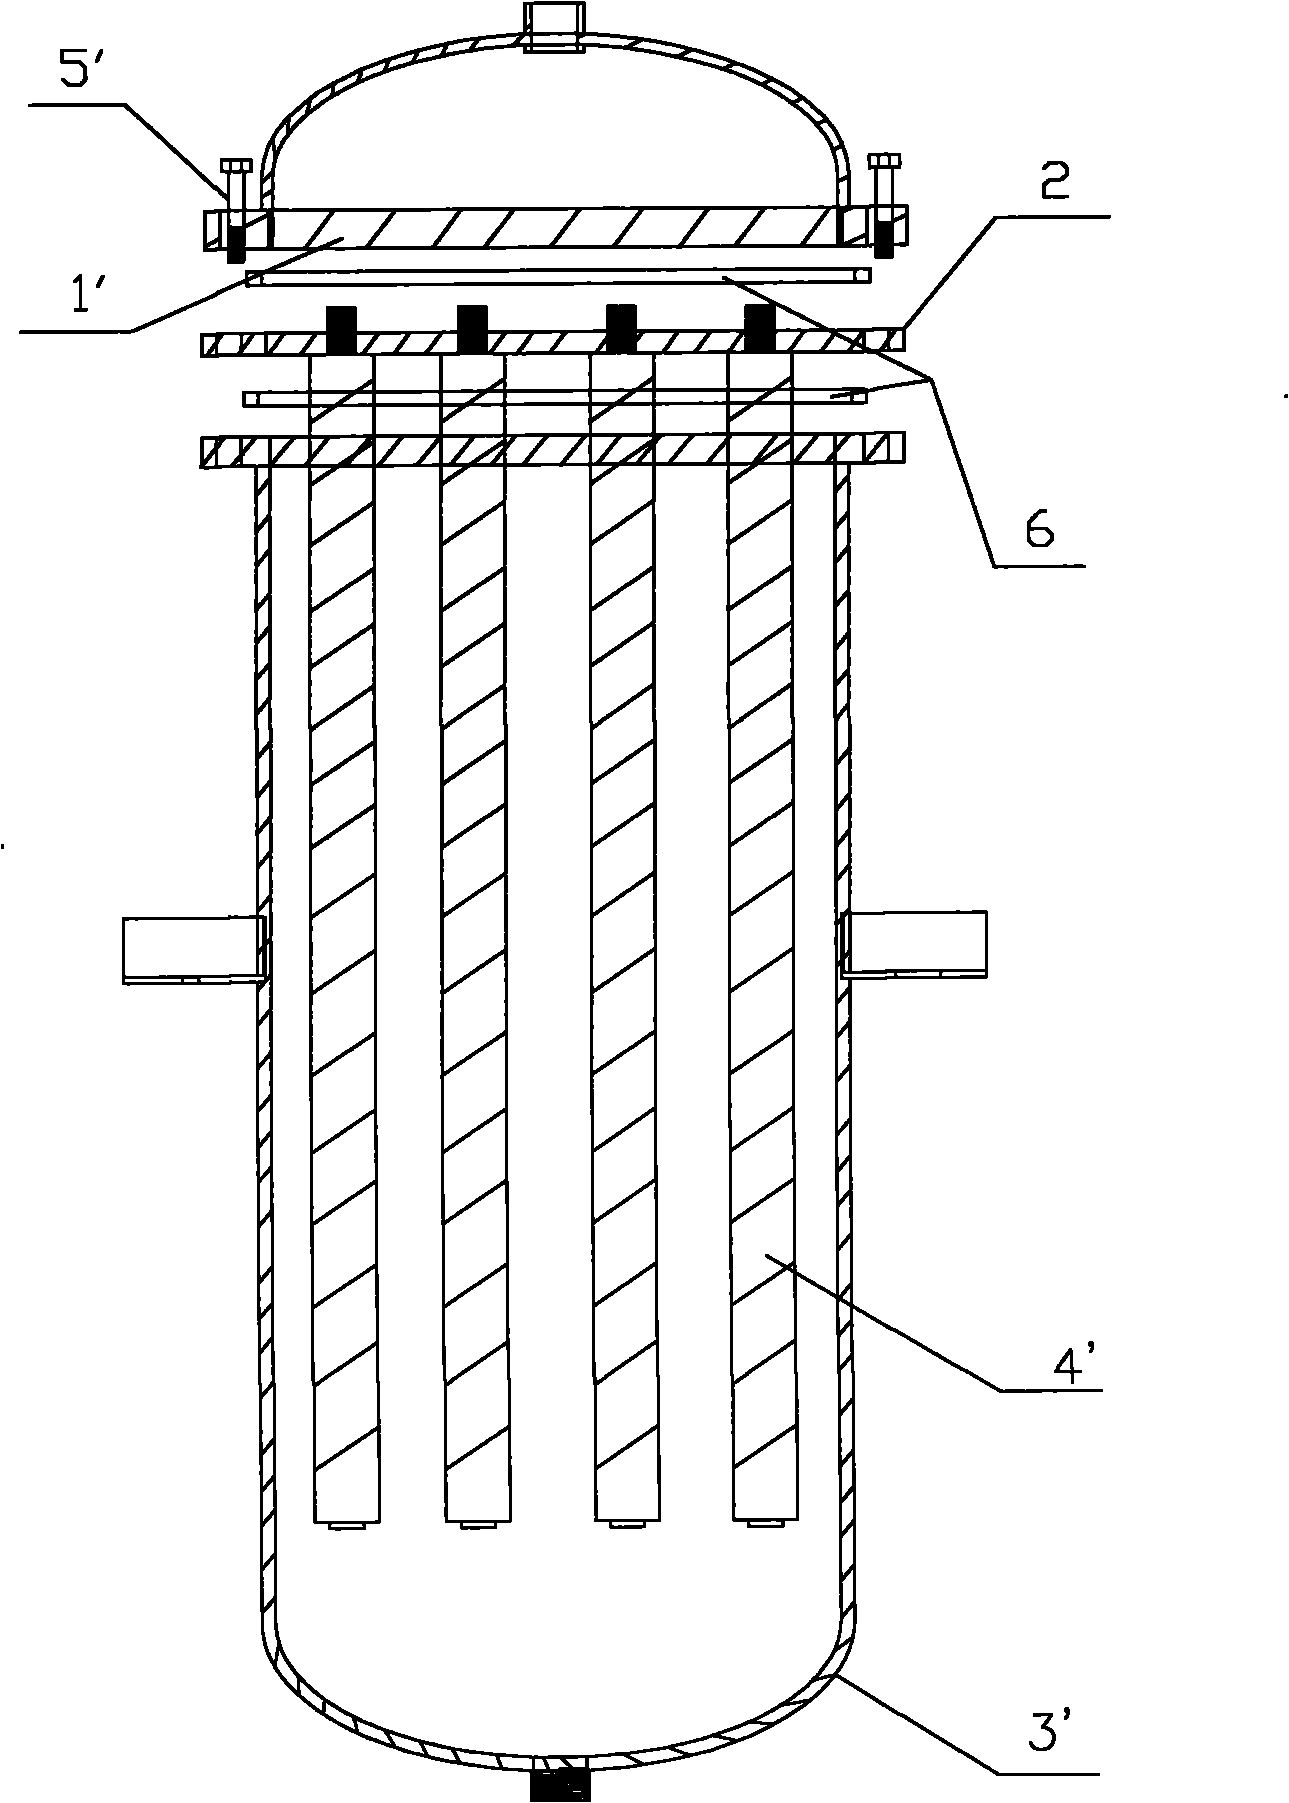 Improved structure of filter vat